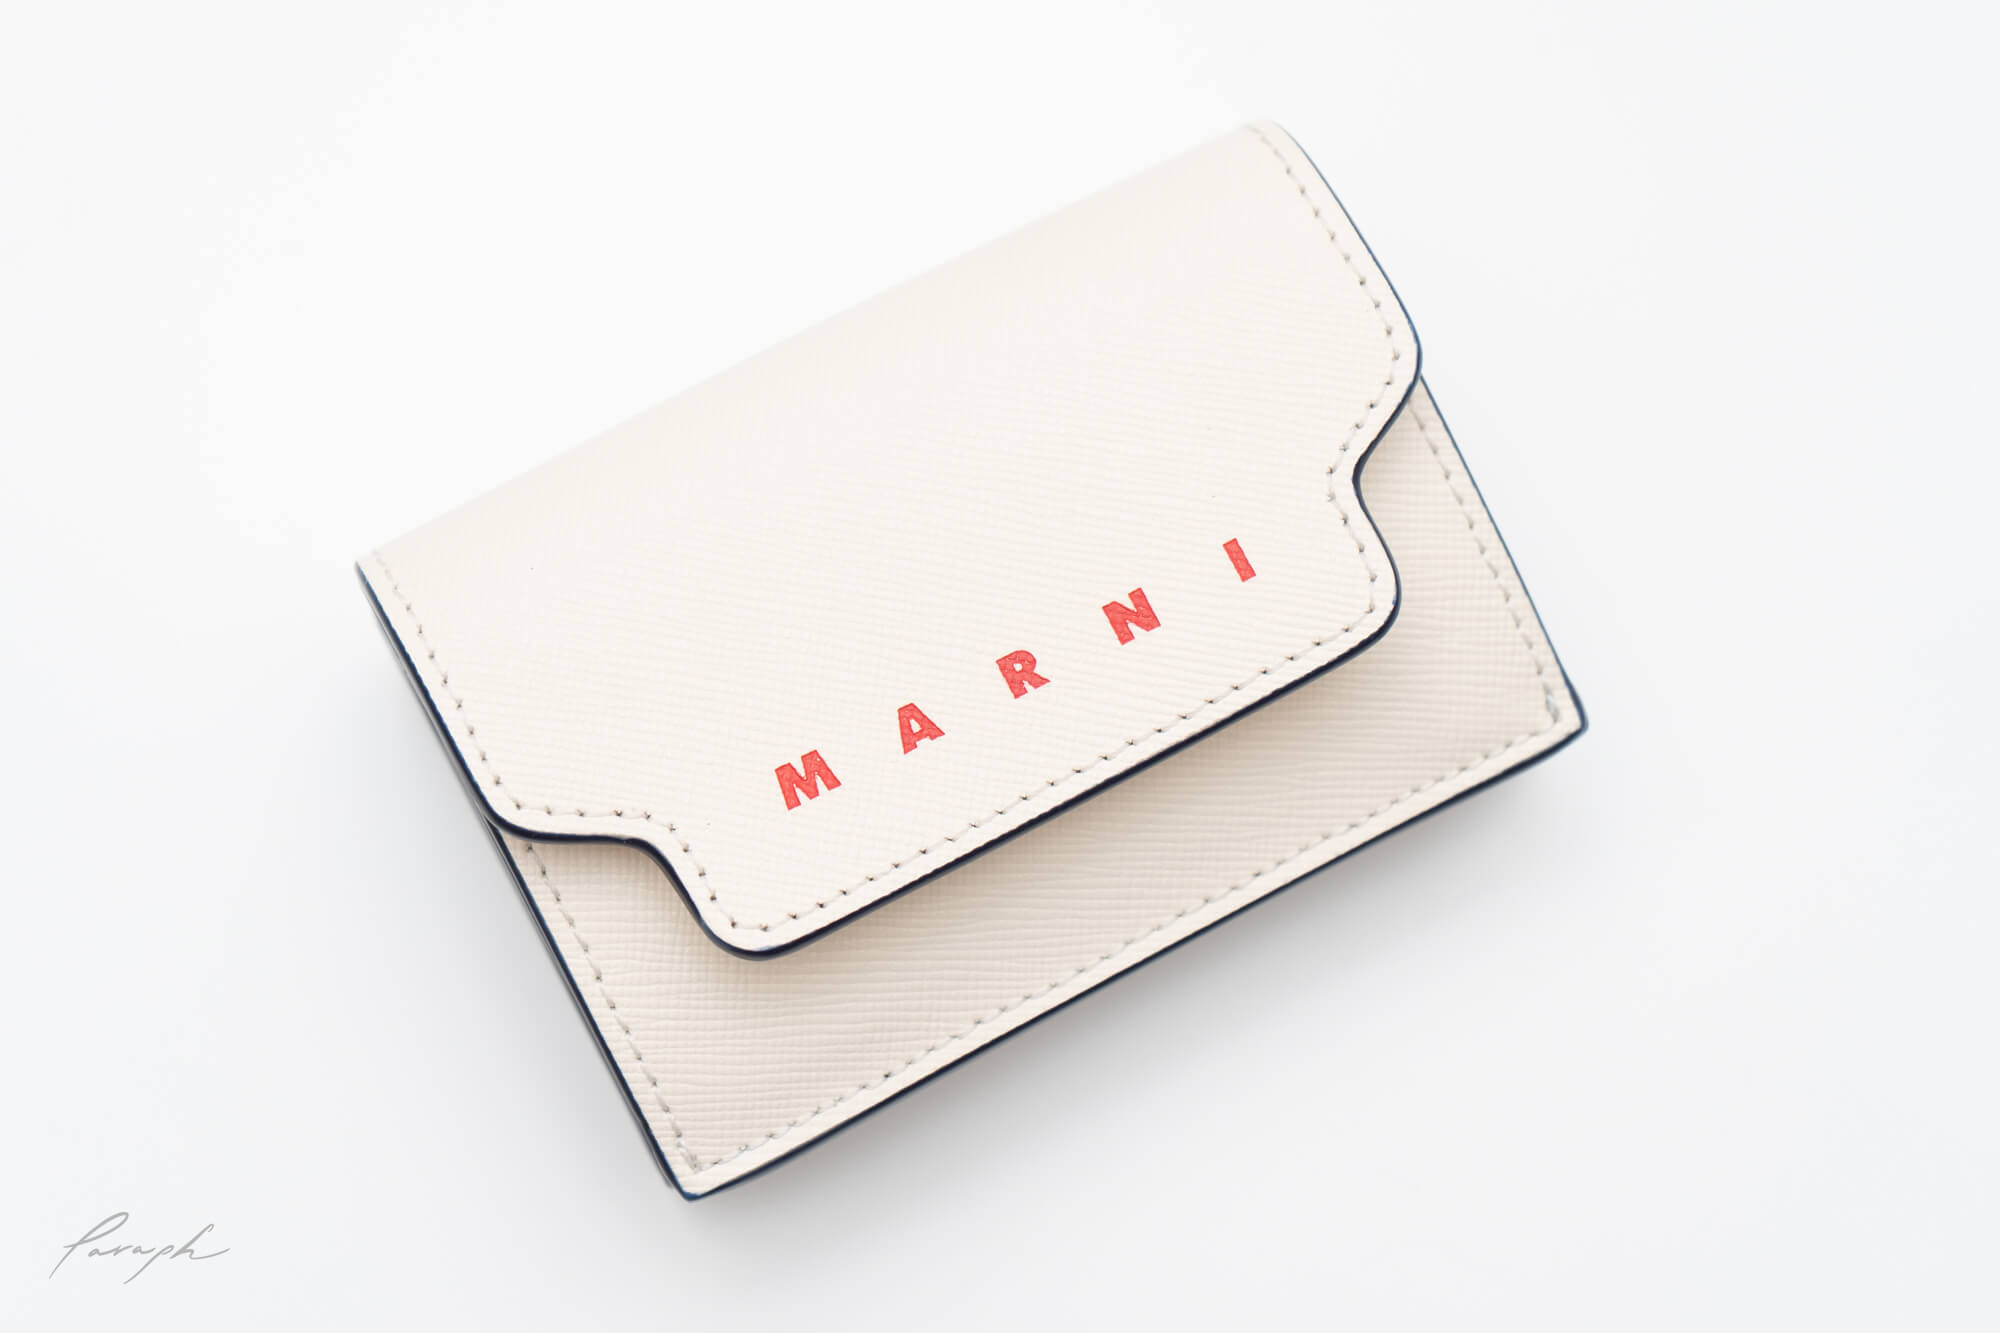 MARNIで出会った小さい財布に一目惚れ。 - Paraph | Yahoo! JAPAN クリエイターズプログラム